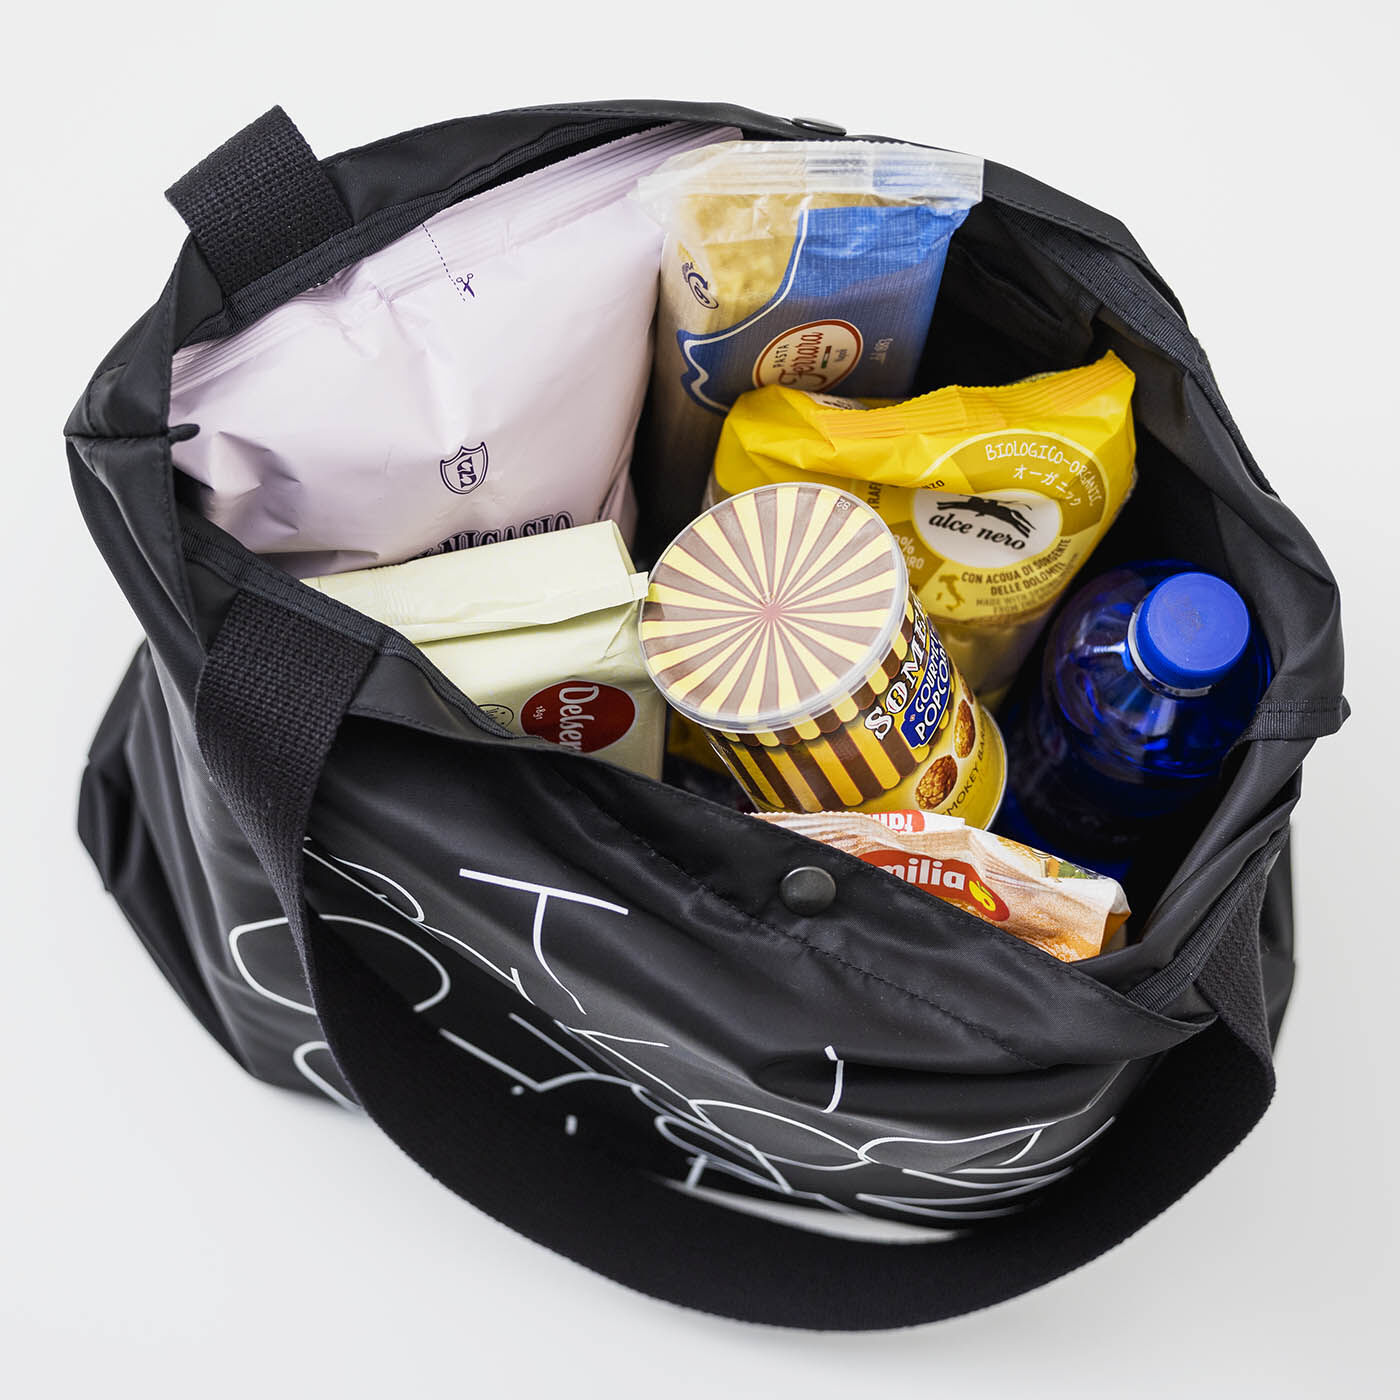 フェリシモコレクション|ブリリアンス神戸基金 KOBE PORT TOWER モディッシュバッグ〈Black〉|大容量なので、ふだんのお買い物にも便利。